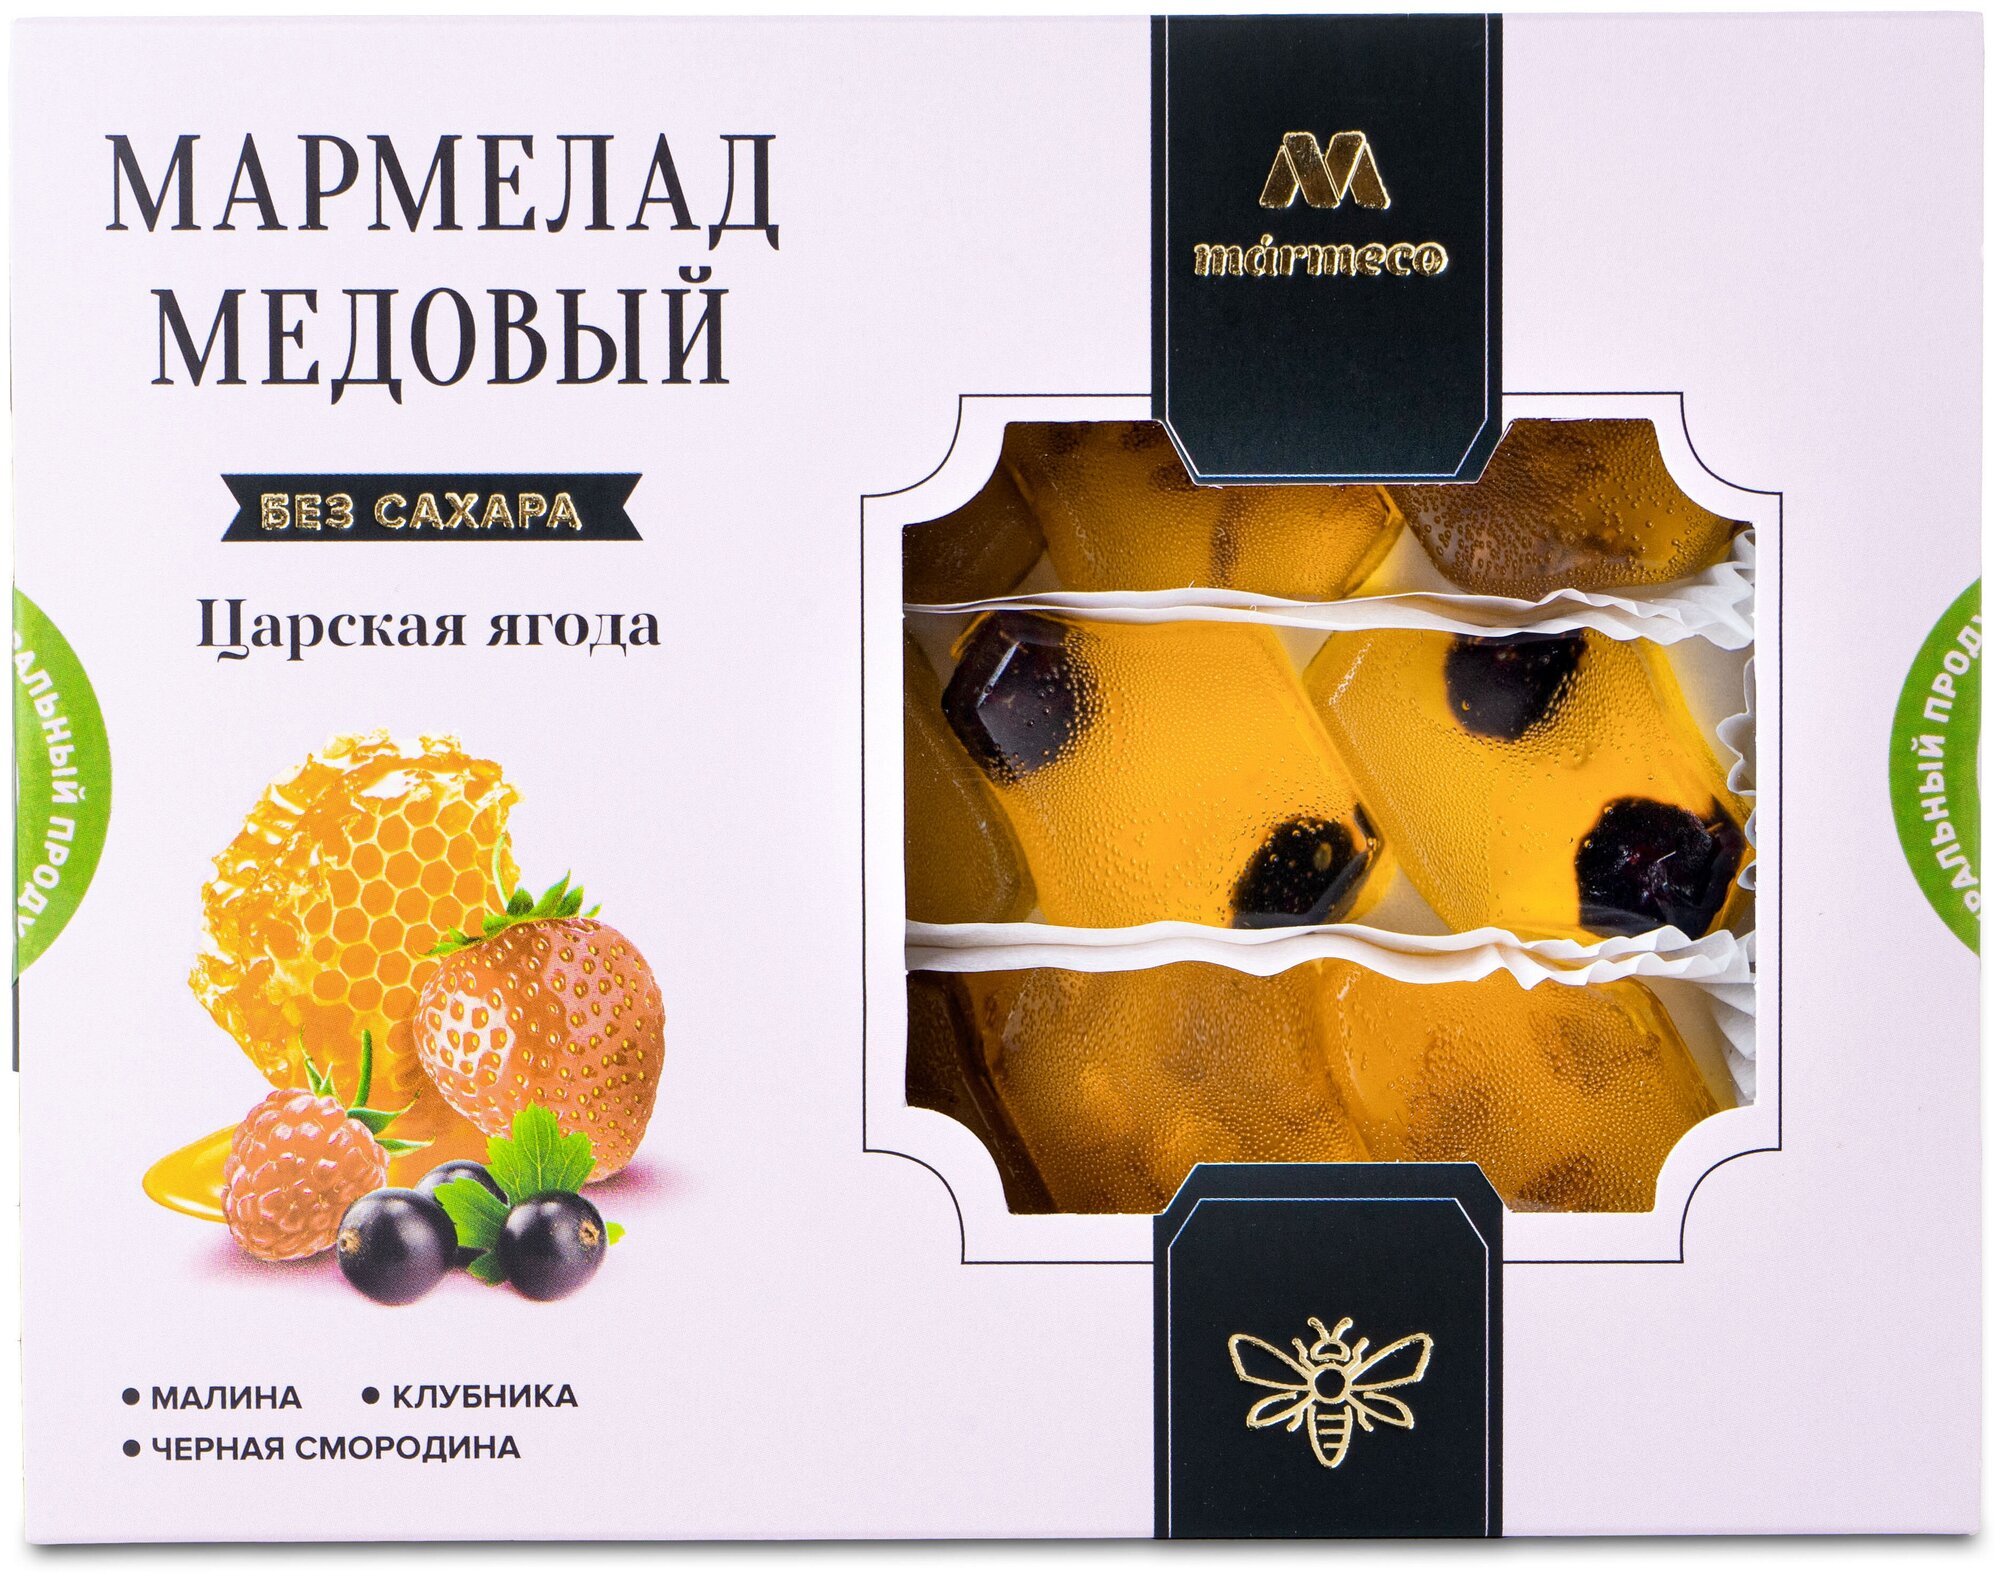 Мармелад медовый Marme Царская ягода, без сахара, 200 гр. - фотография № 1